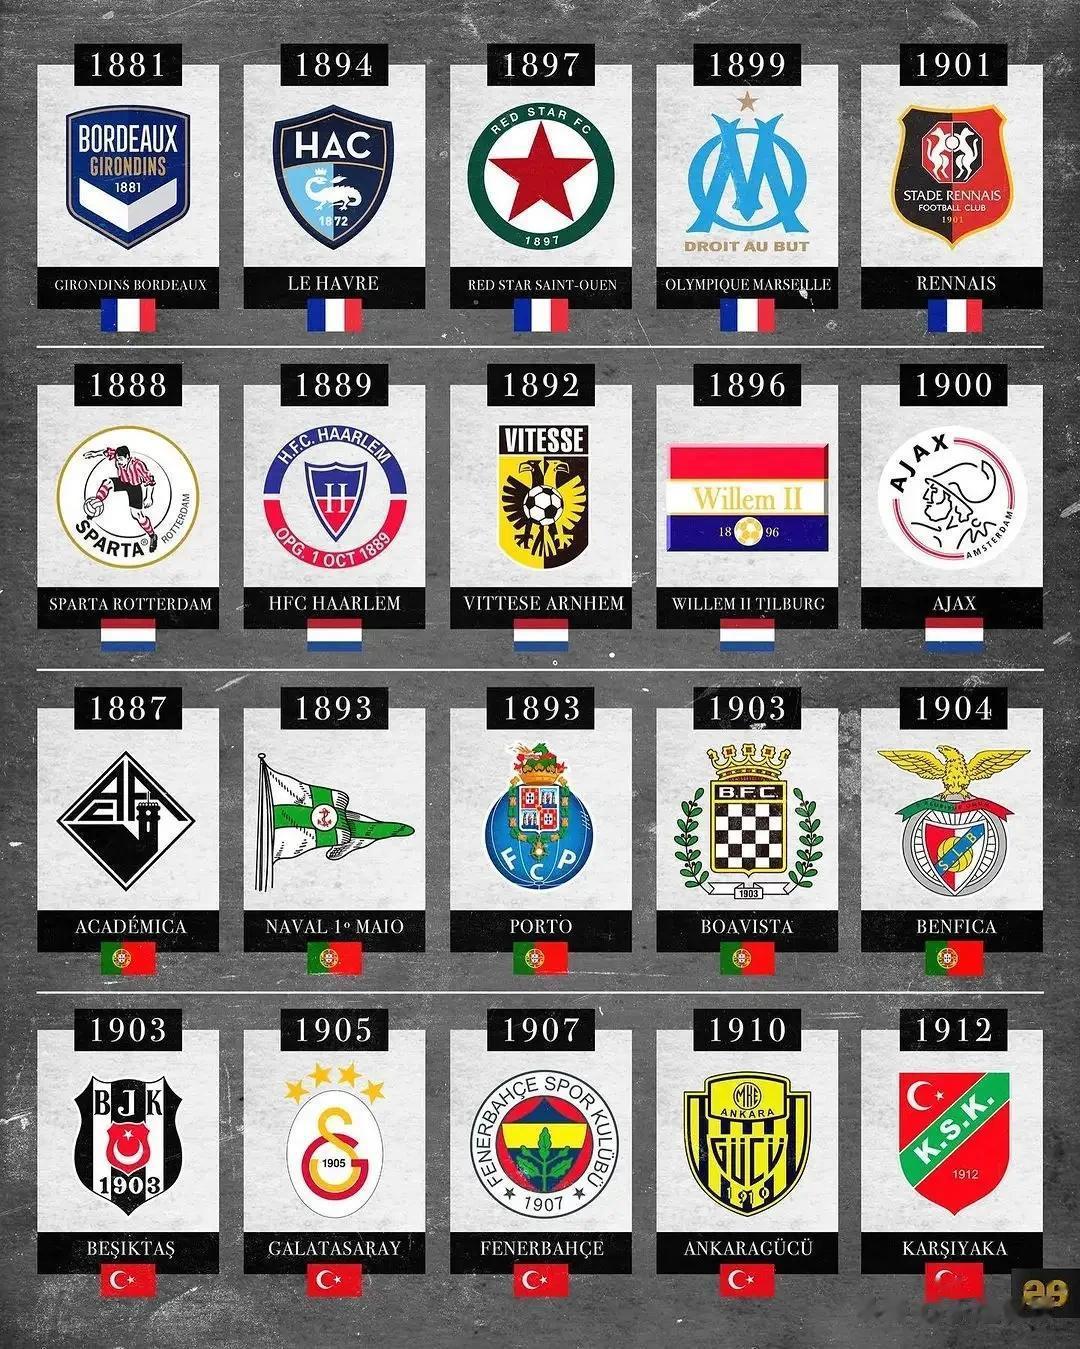 足坛历史上成立历史最早的俱乐部，豪门球队中波尔图成立于1893年，尤文图斯成立于(2)